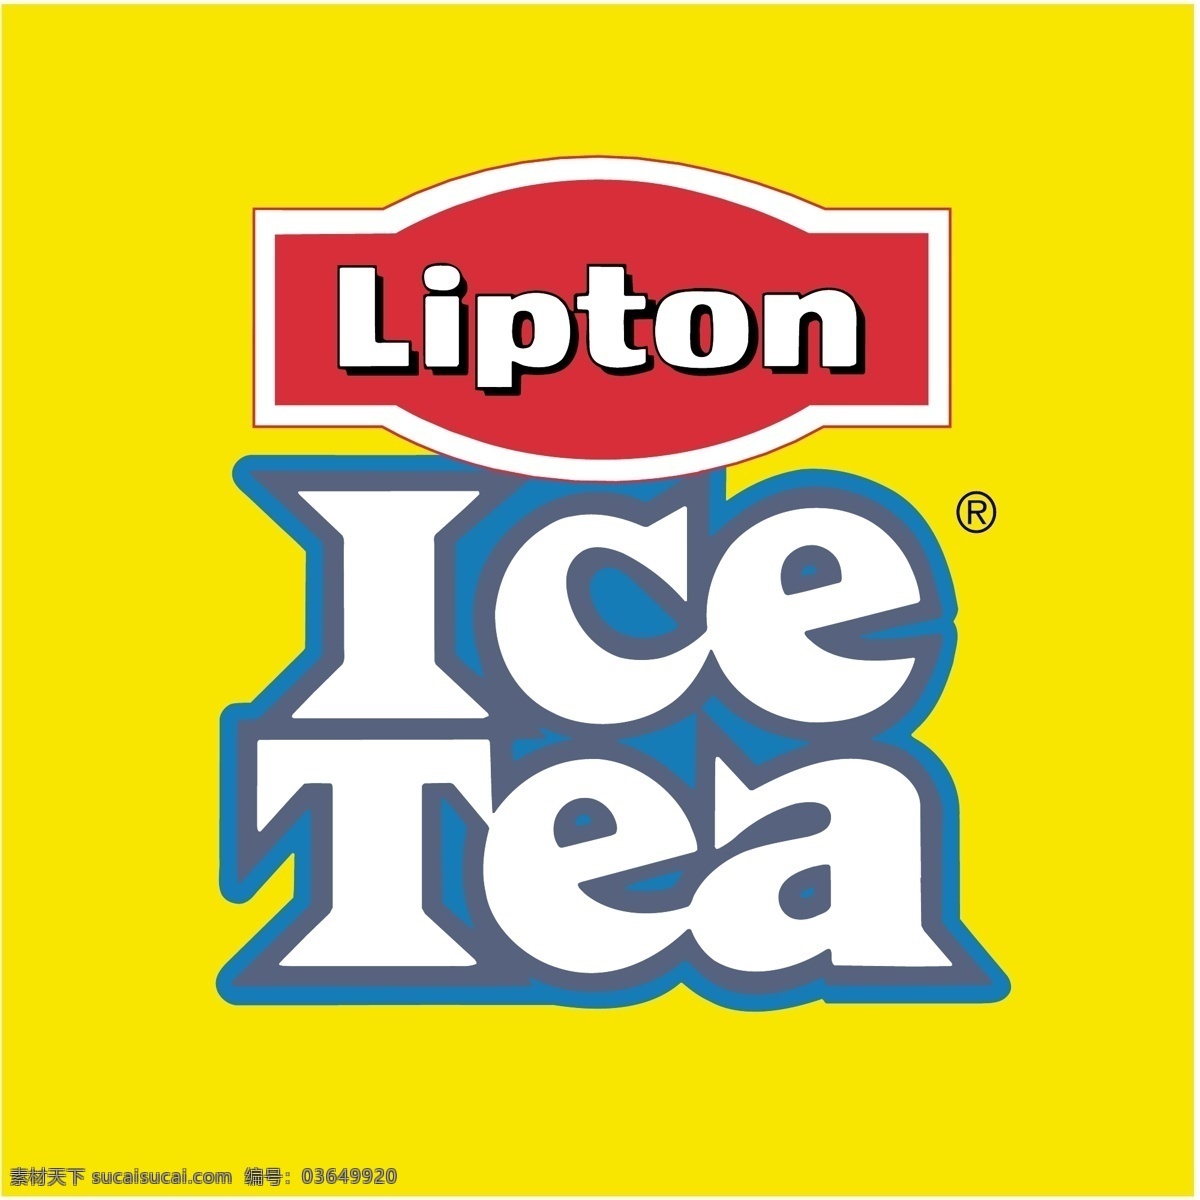 冰红茶0 冰红茶 红茶 自由 冰 冰红茶向量 向量 标志 矢量 冰茶 图像 矢量冰茶 冰红茶标志 艺术 载体 矢量绘图的冰 建筑家居